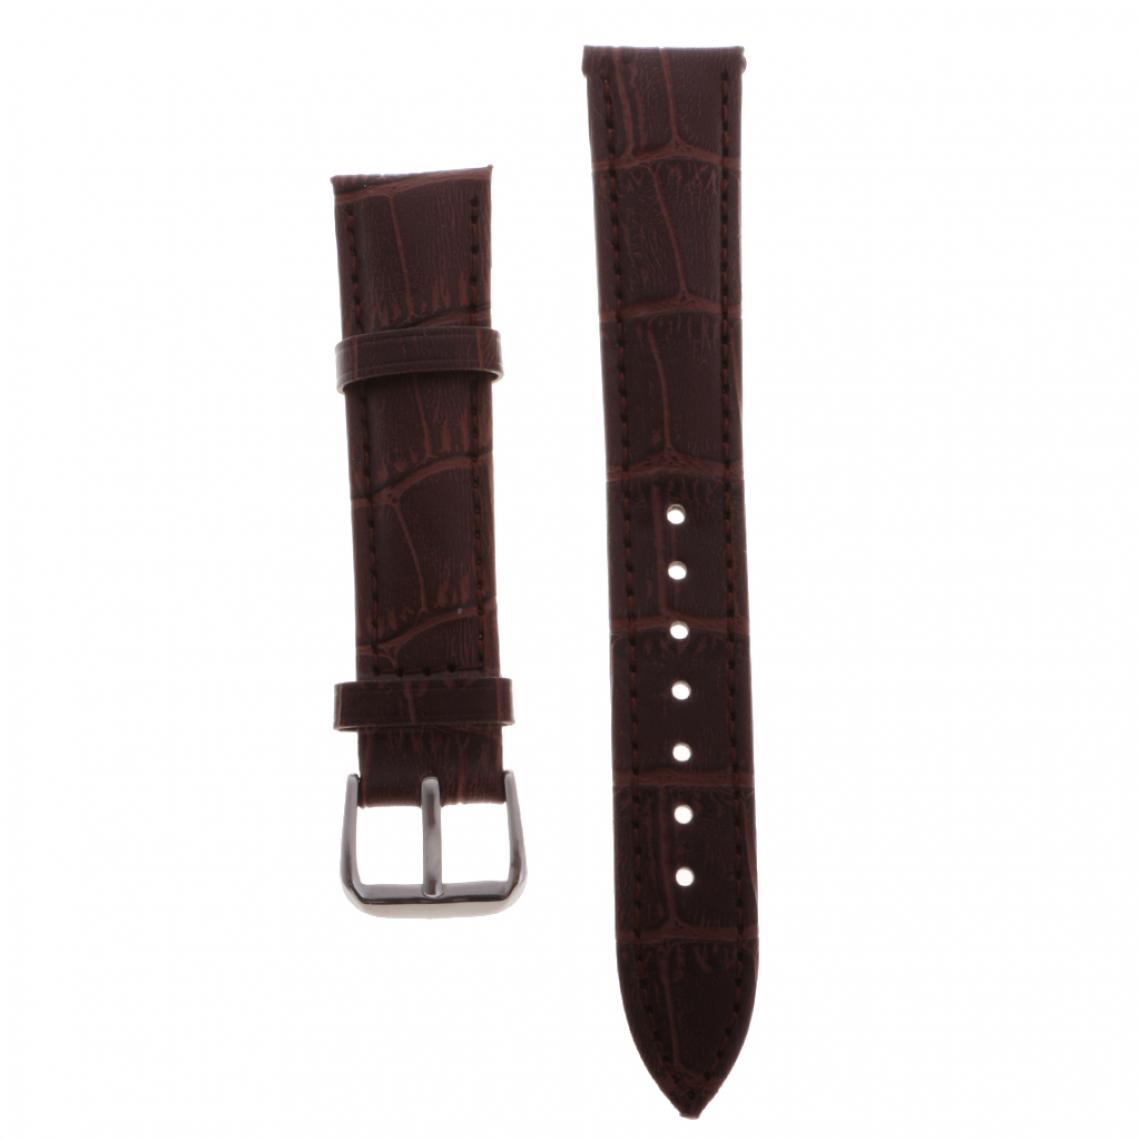 marque generique - Bracelet en cuir de haute qualité bracelet bracelet pour montres 18mm noir - Accessoires montres connectées